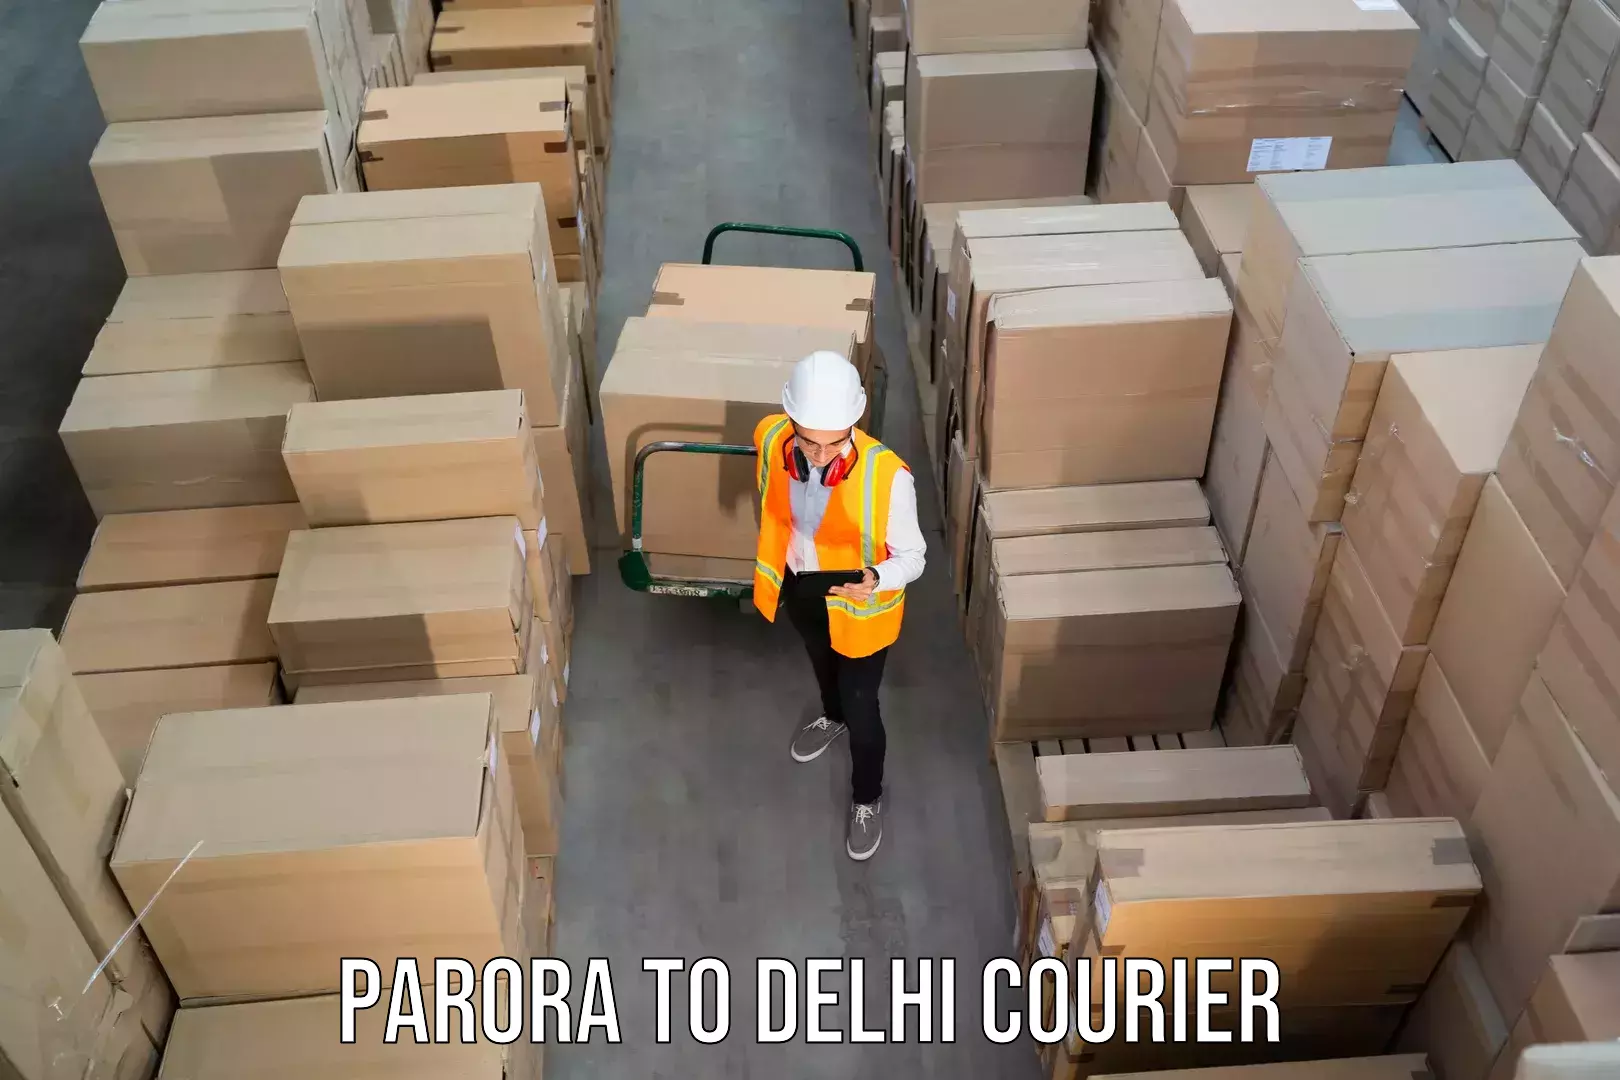 Weekend courier service Parora to Jamia Millia Islamia New Delhi